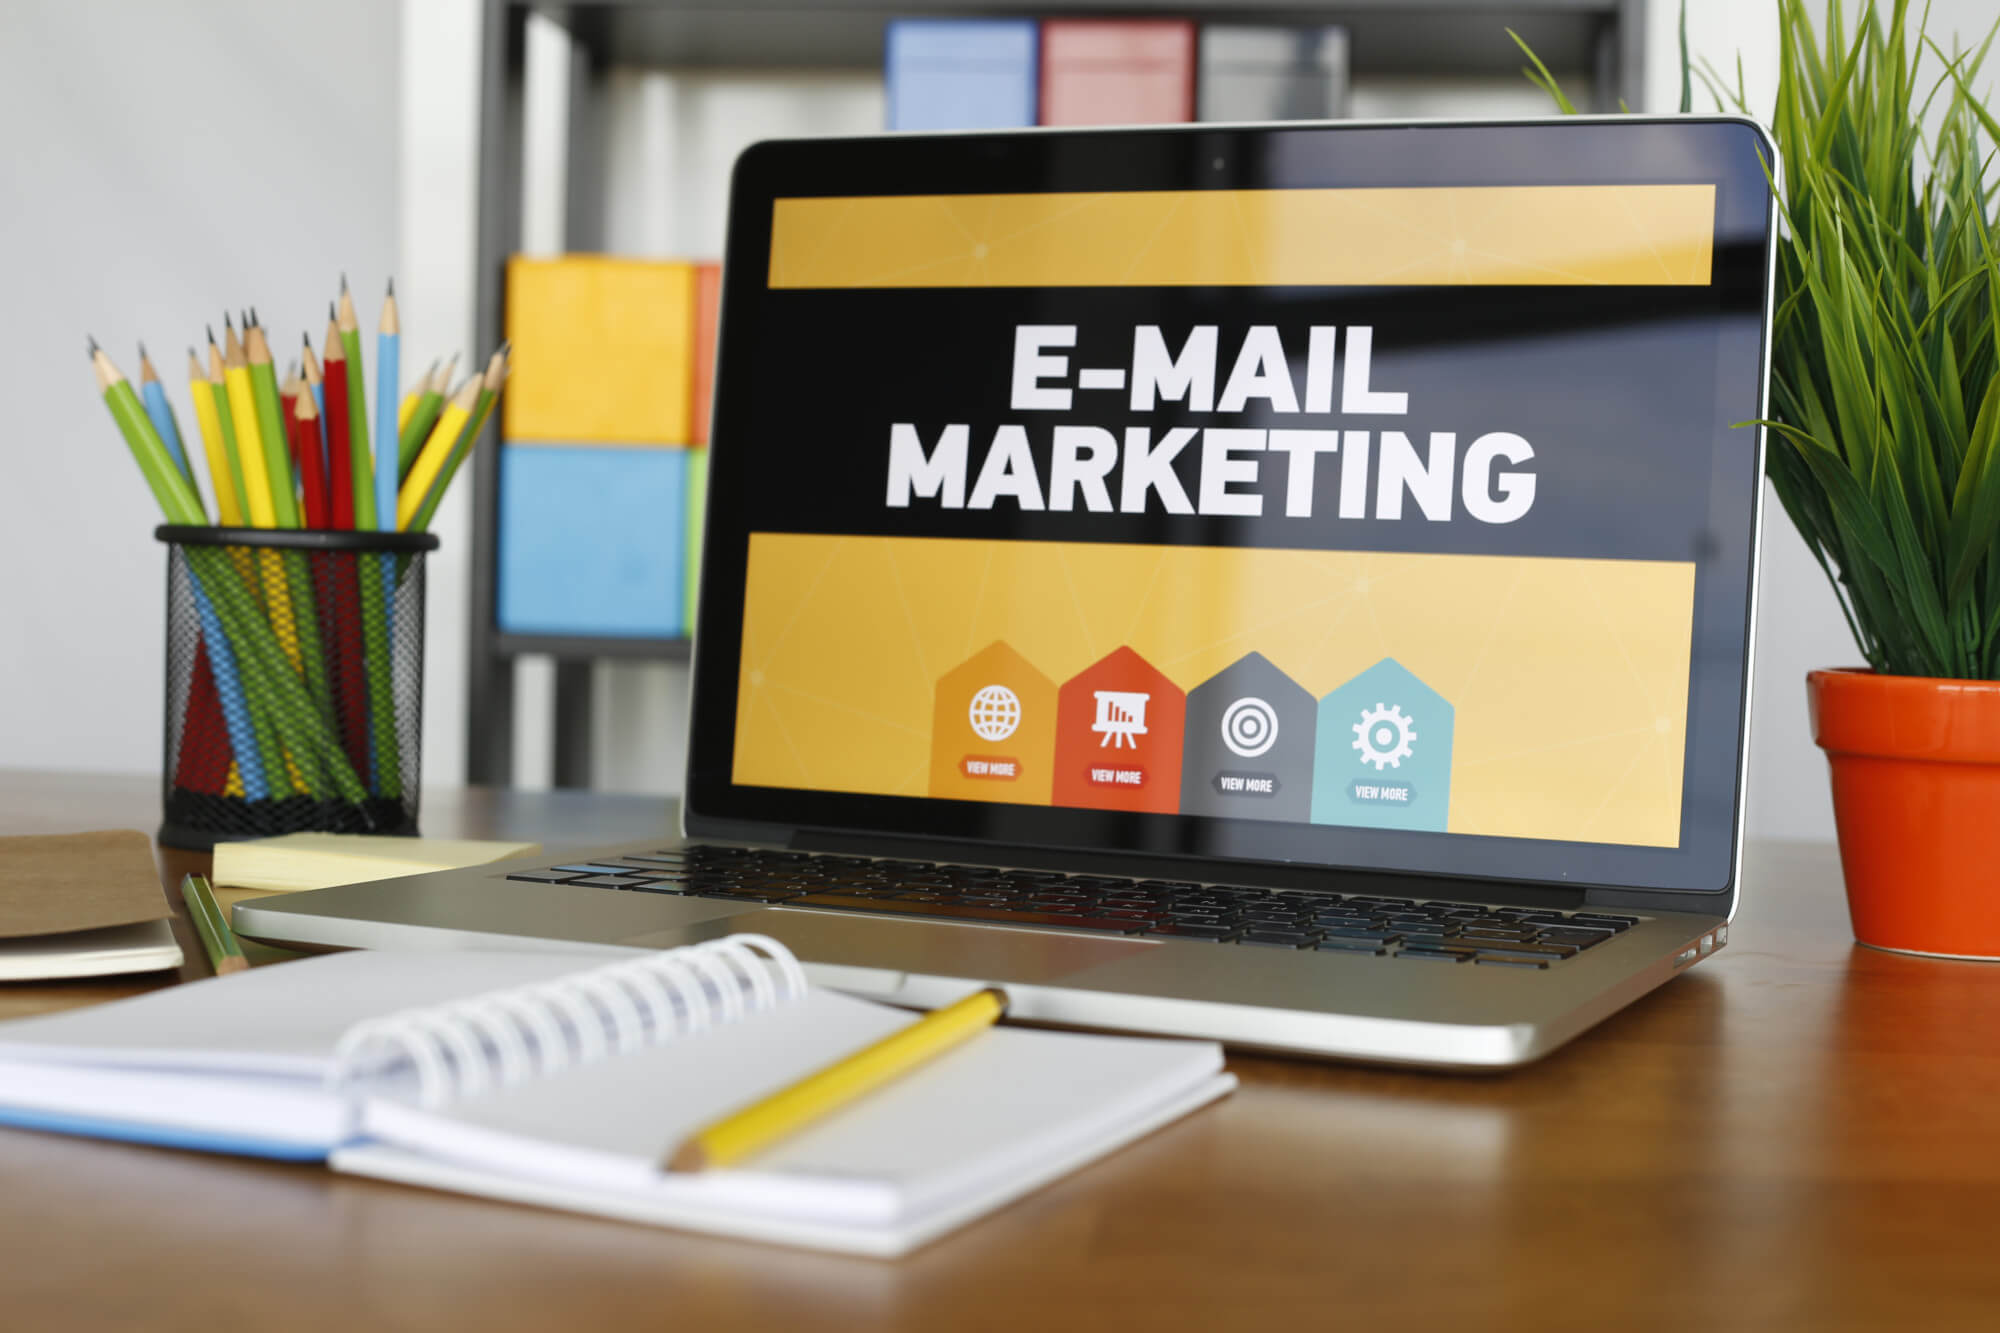  Email marketing được xem là một chiến dịch hiệu quả cho hoạt động tiếp cận khách hàng của các doanh nghiệp.